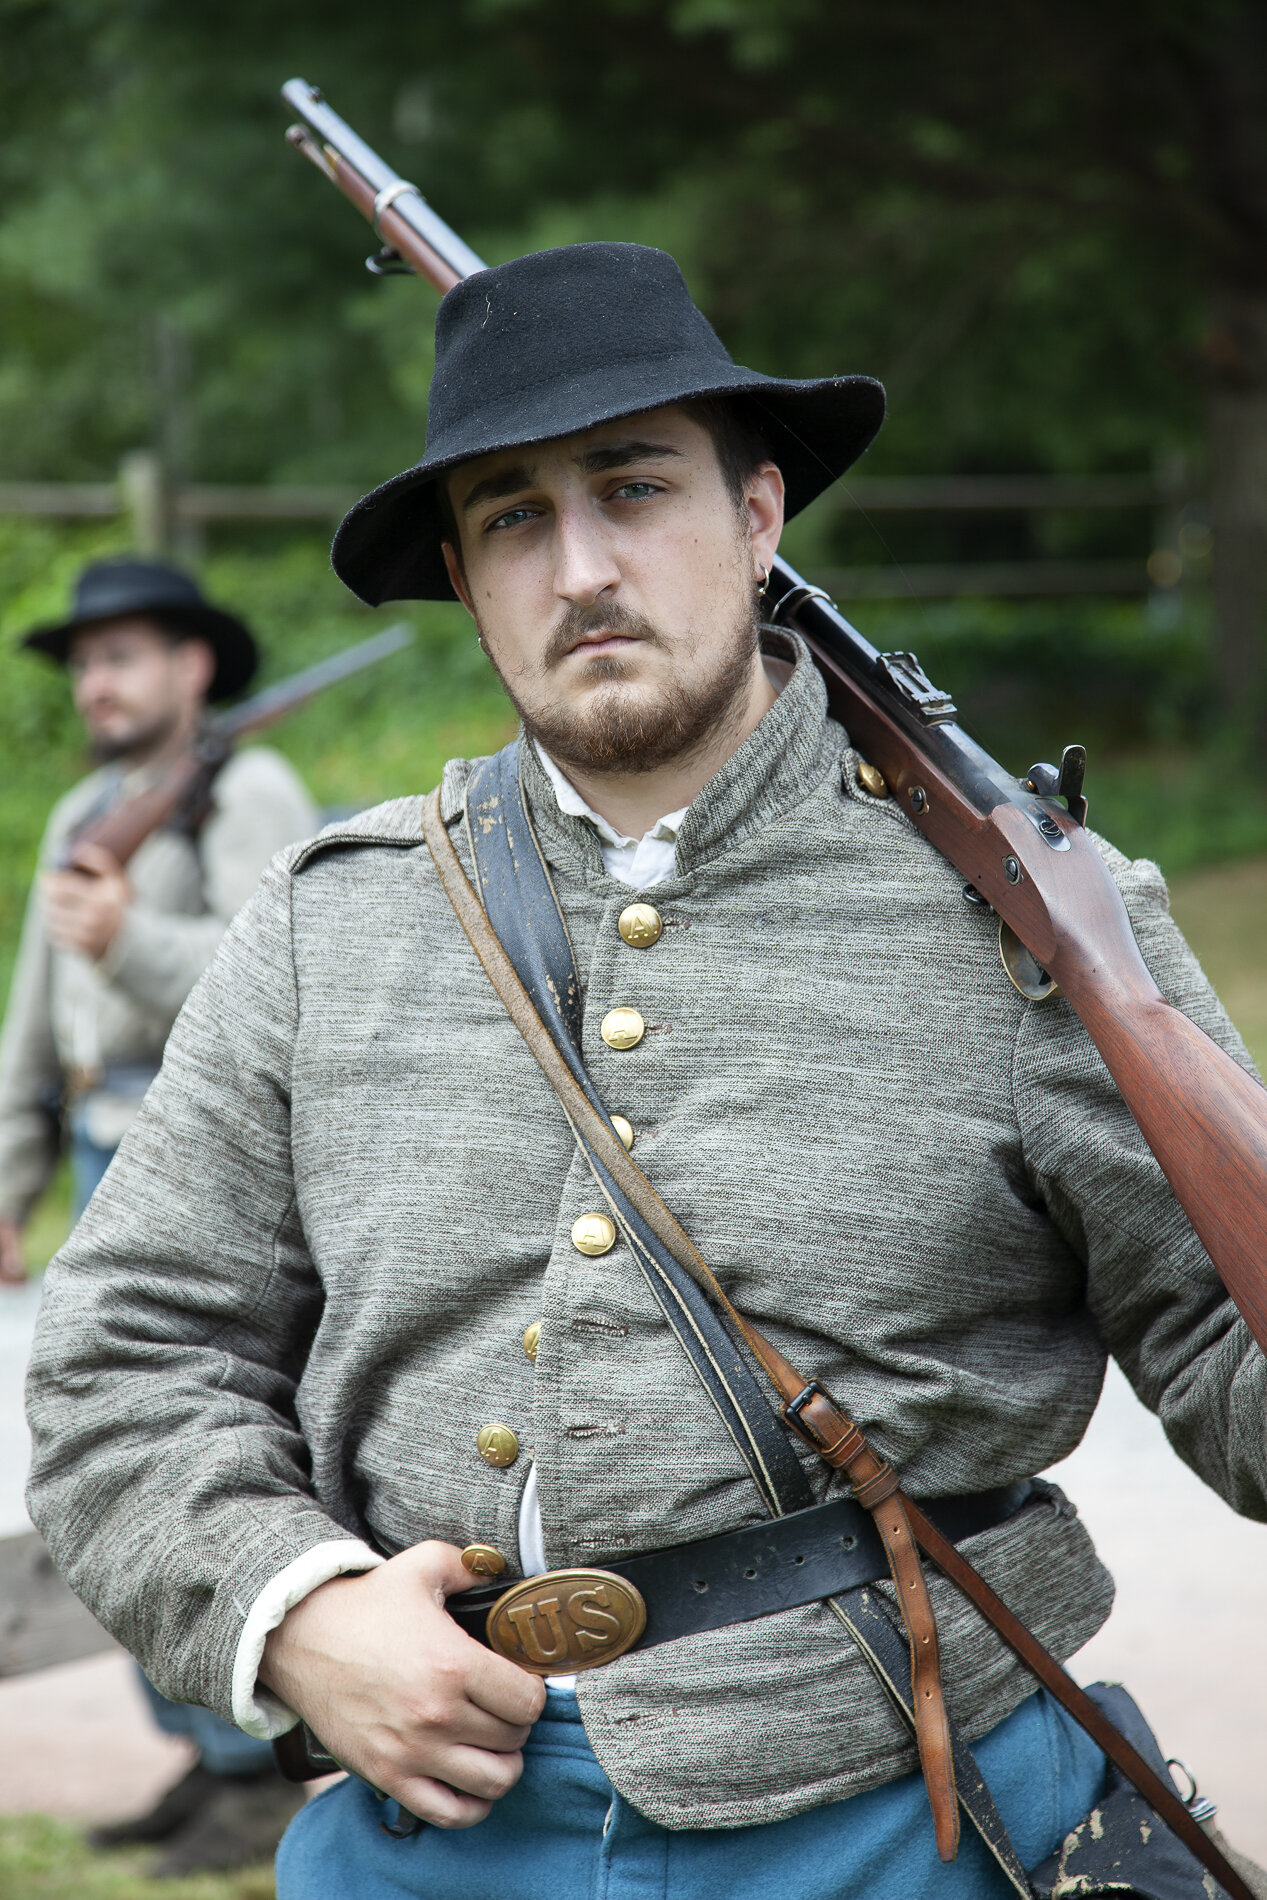 Soldier at a Civil War Reenactment, Liberty, NY